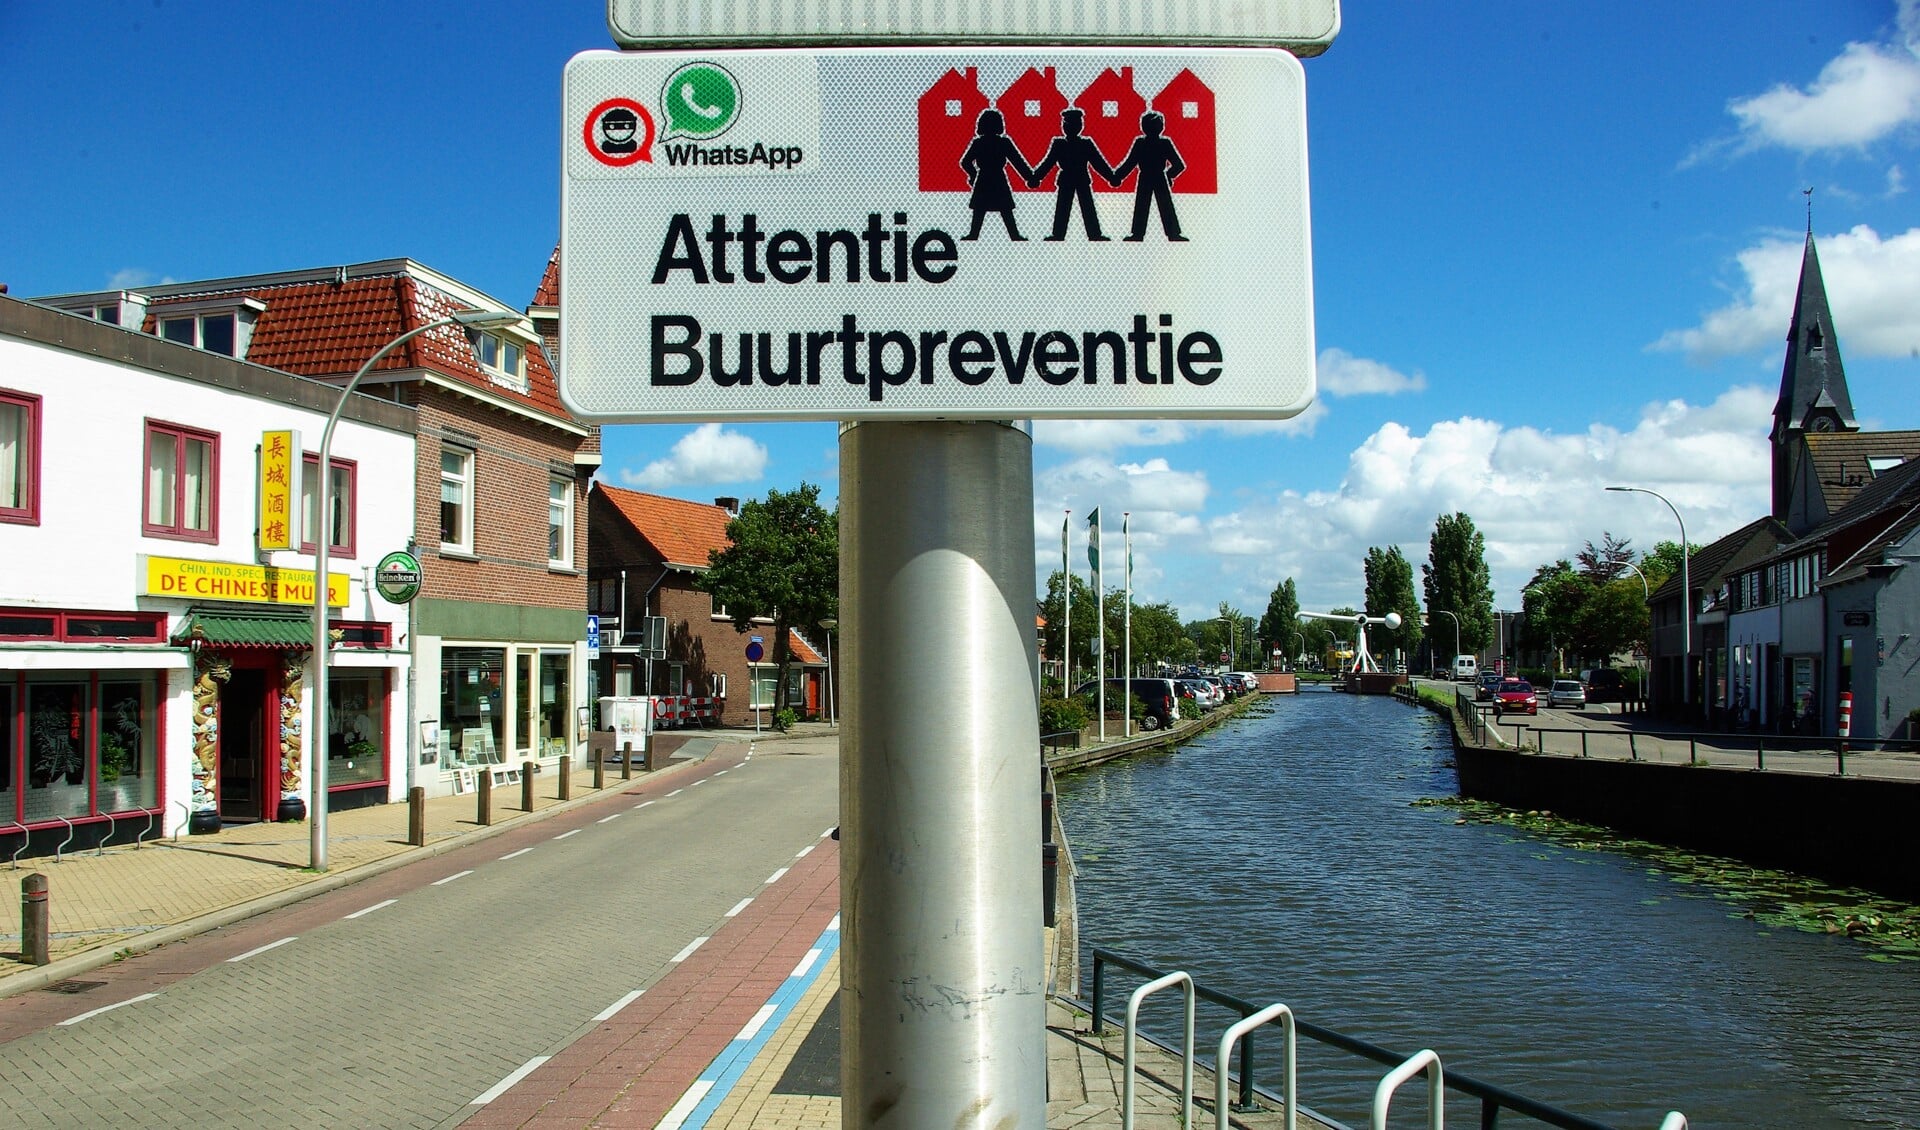 Den Hoorn heeft geen eigen politiebureau, maar wel een groep van vijftig buurtpreventen die een oogje in zeil houden. In Schipluiden nemen zo'n zestig dorpsbewoners die taak op zich. 